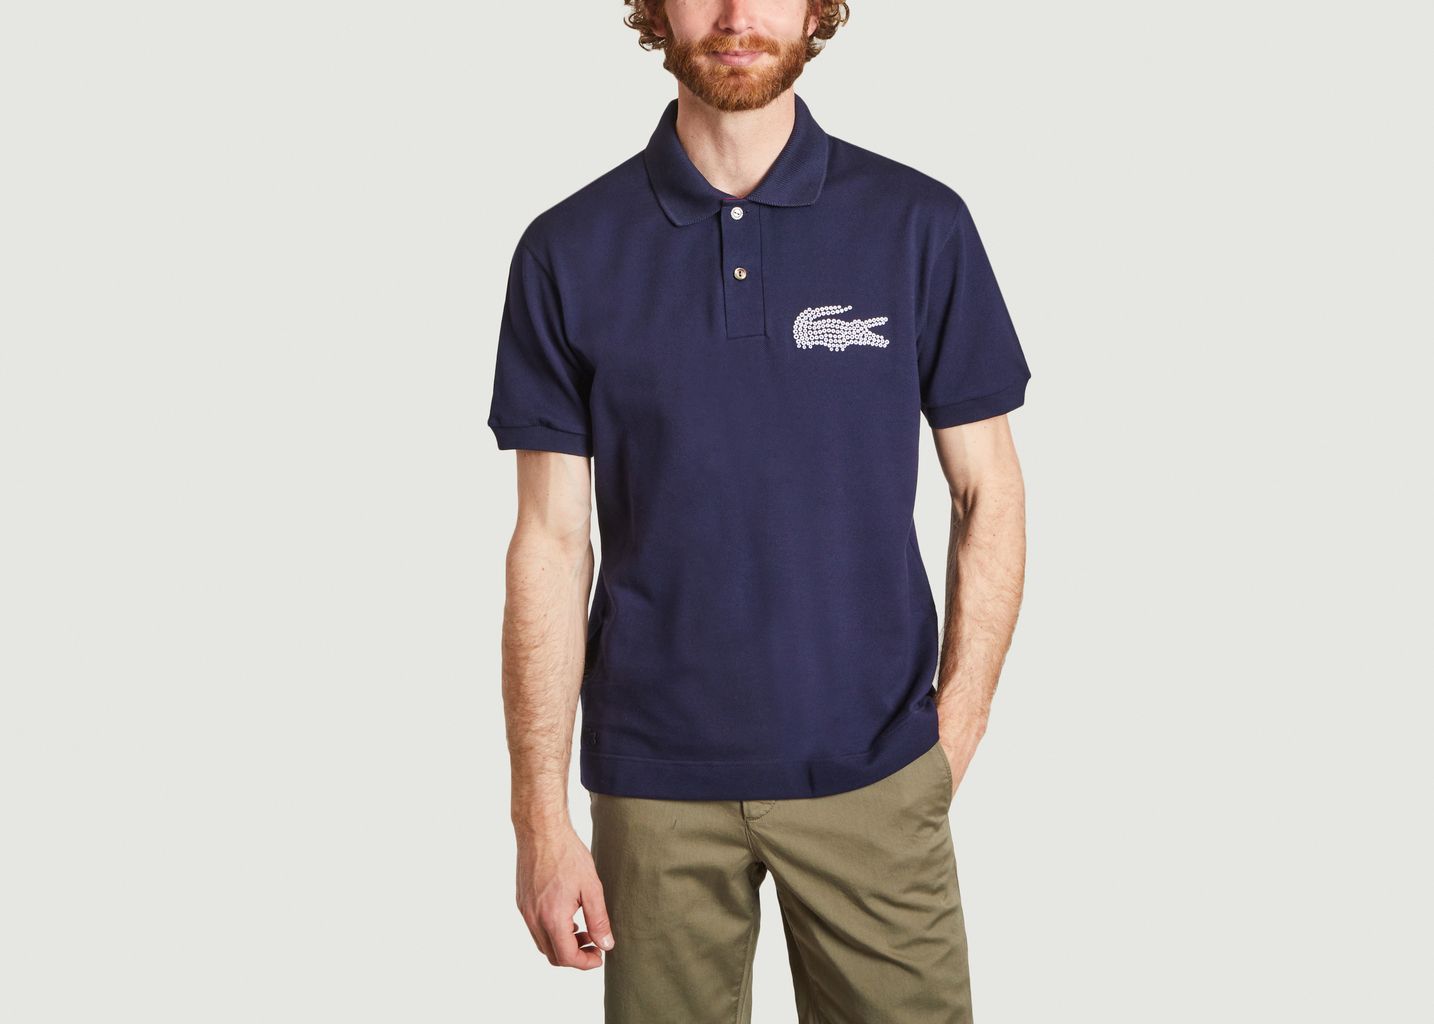 Verkaufen Marineblau Bio-Baumwolle Sie Gerades großem mit Lacoste Logo -50%| Poloshirt aus zu L\'Exception